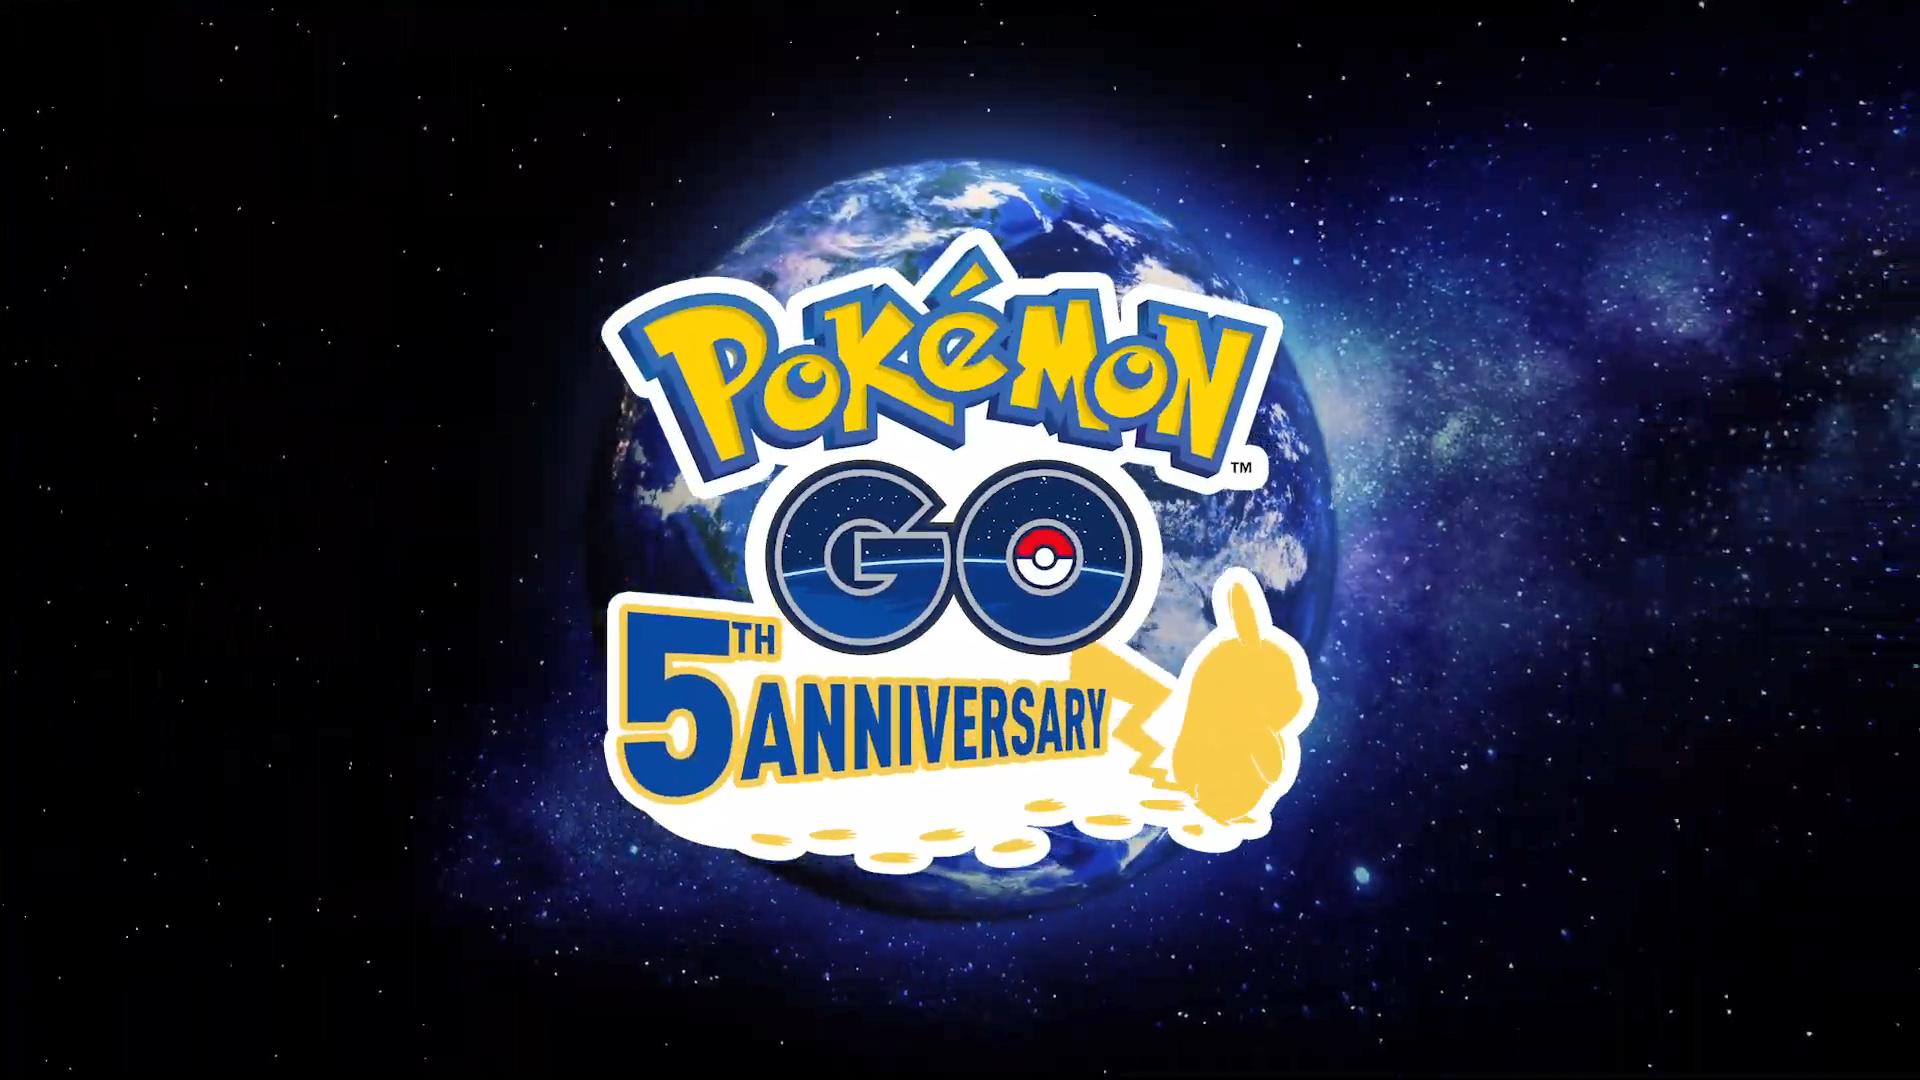 《宝可梦GO》发布5周年纪念视频 庆典活动现已开始